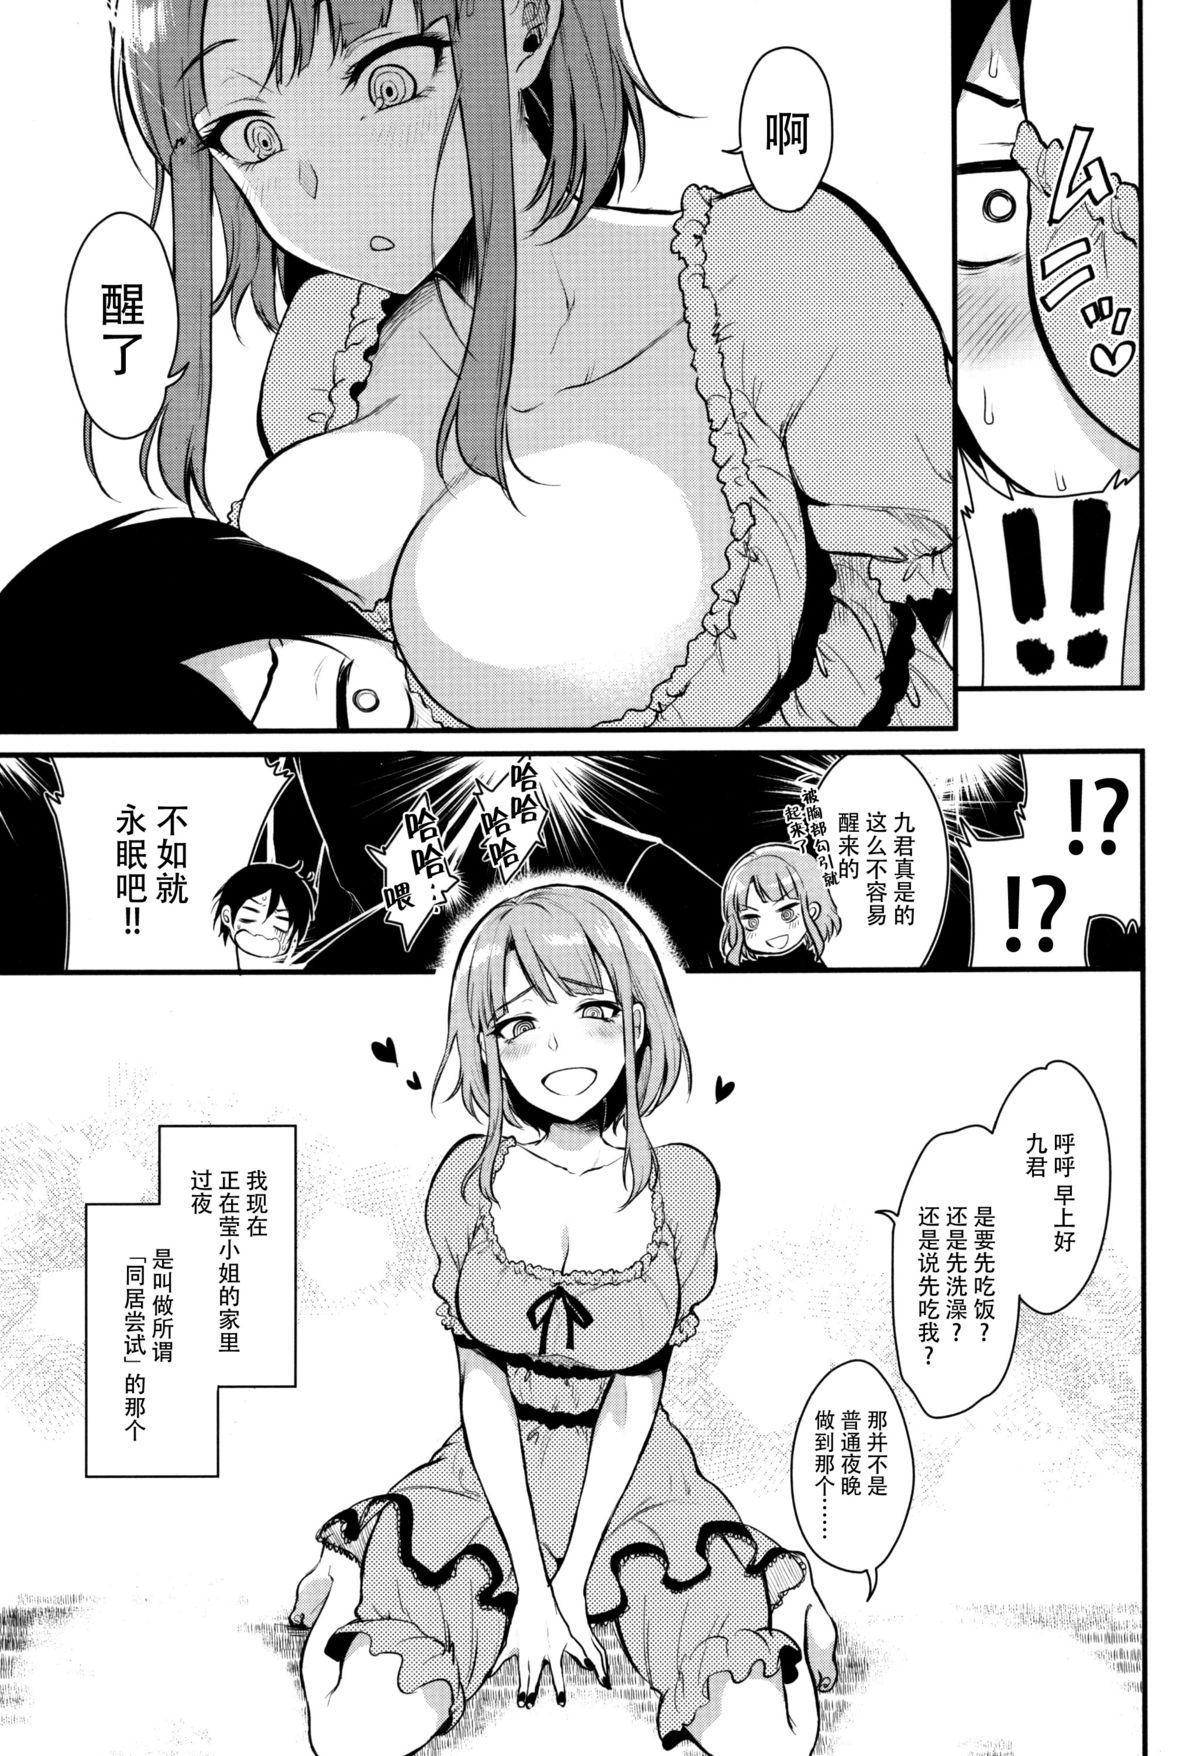 Cutie Otona no Dagashi 3 - Dagashi kashi Horny Slut - Page 8